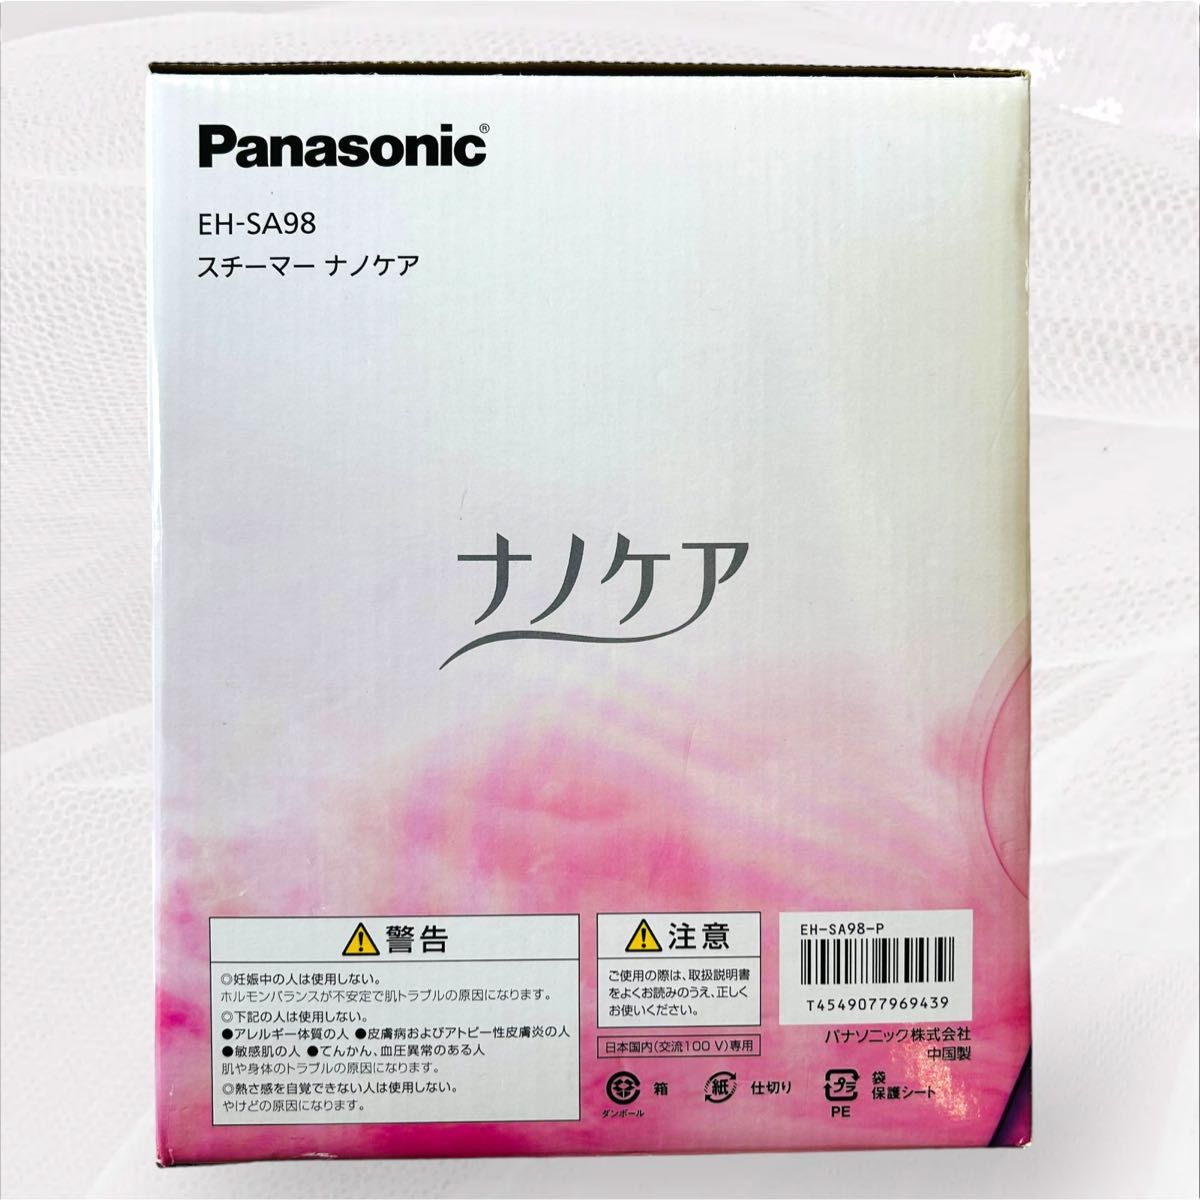 【新品未使用】 Panasonic パナソニック スチーマー ナノケア EH-SA98-P